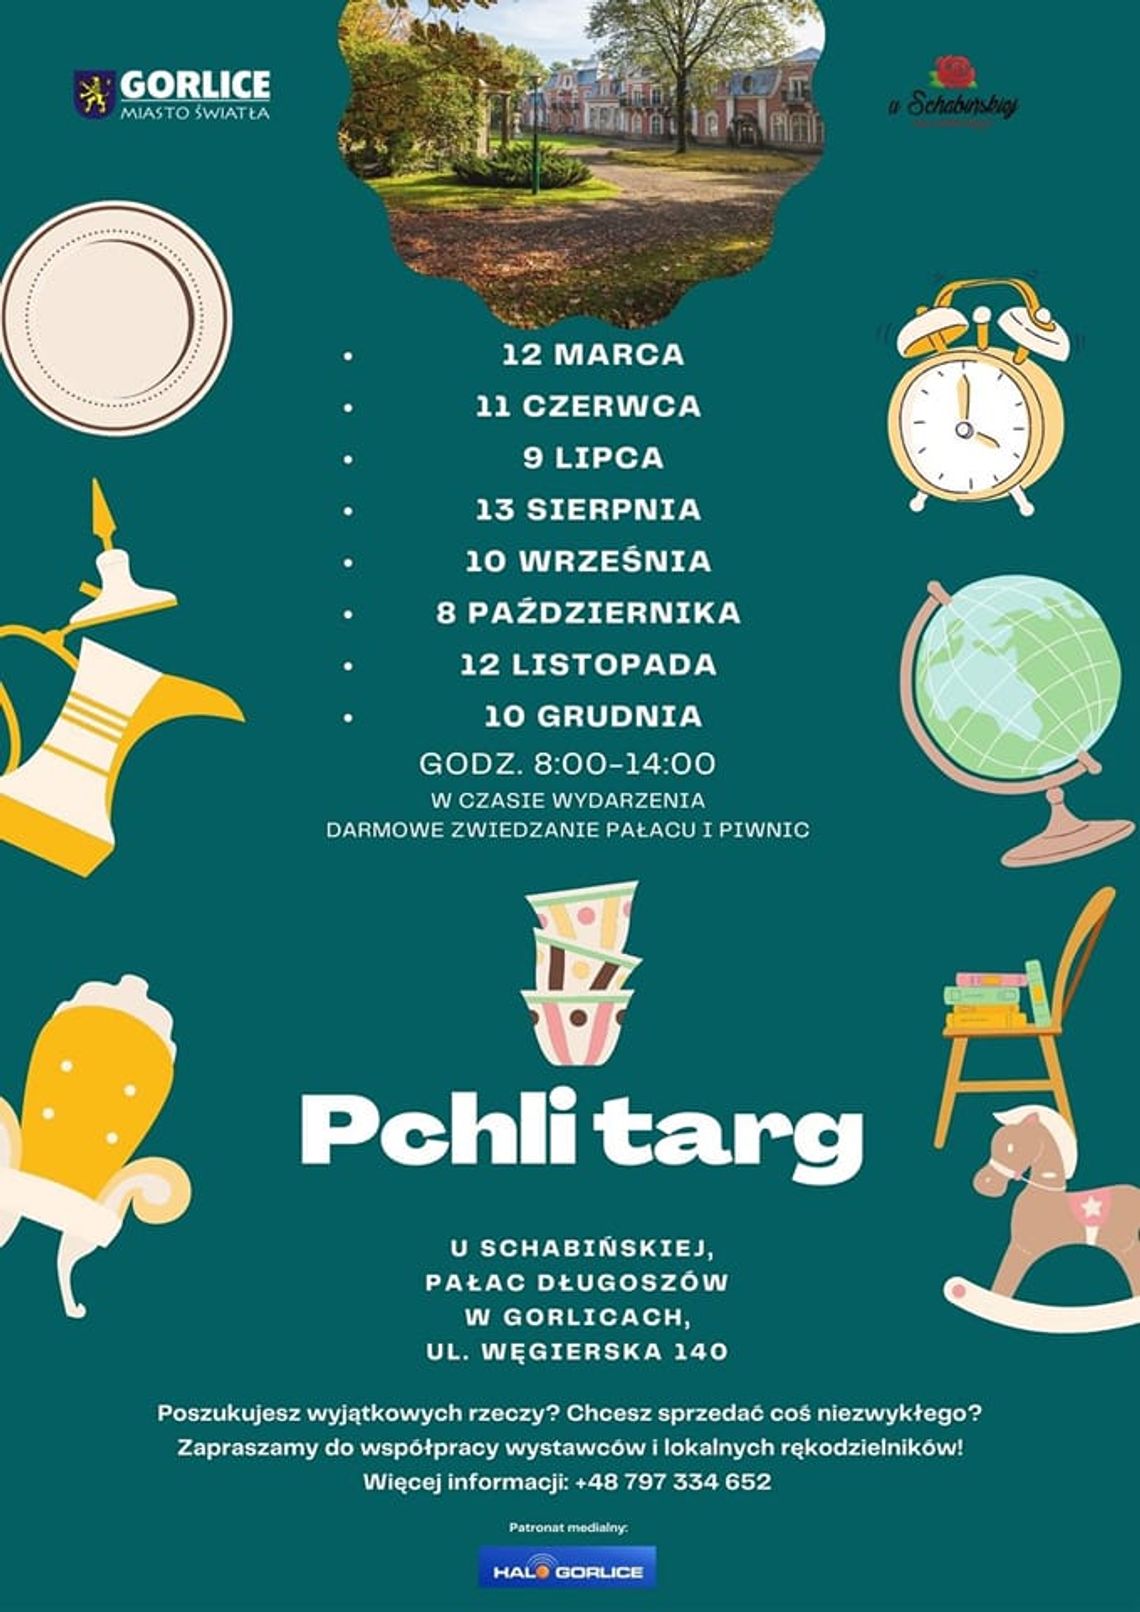 Pchli Targ w Pałacu Długoszów – U Schabińskiej | halogorlice.info